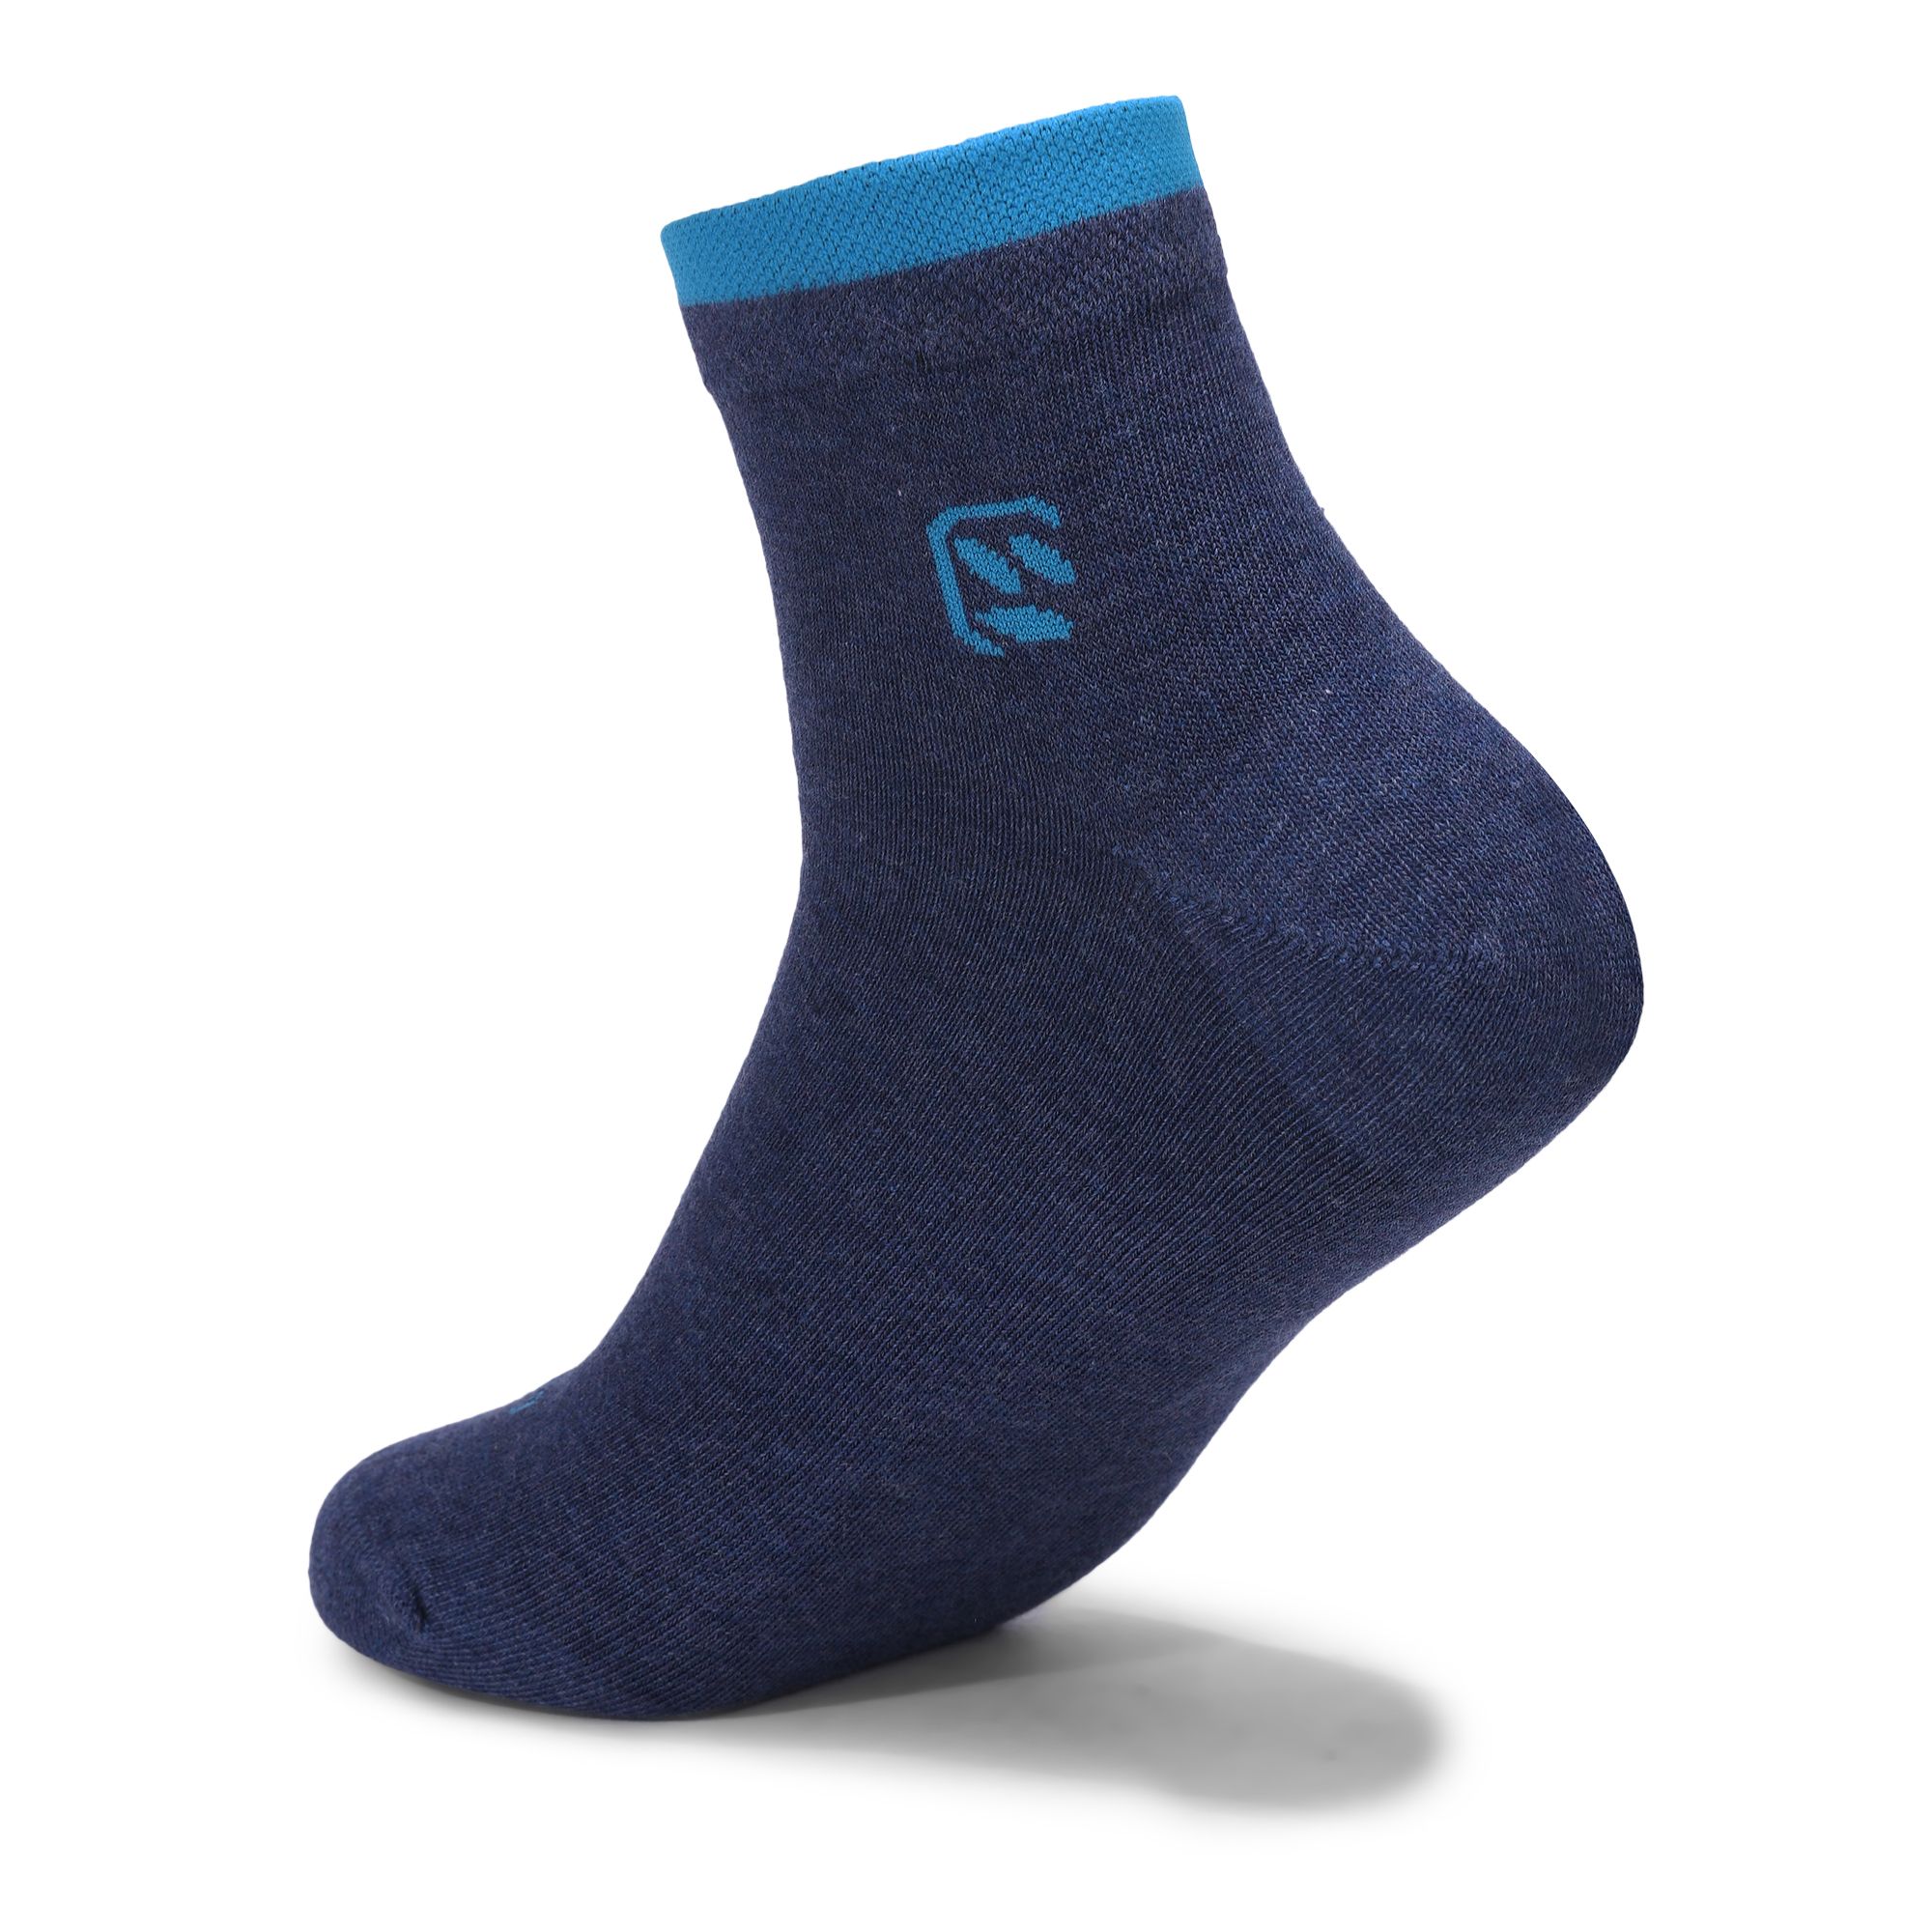 Denim/Turquoise sport socks for men